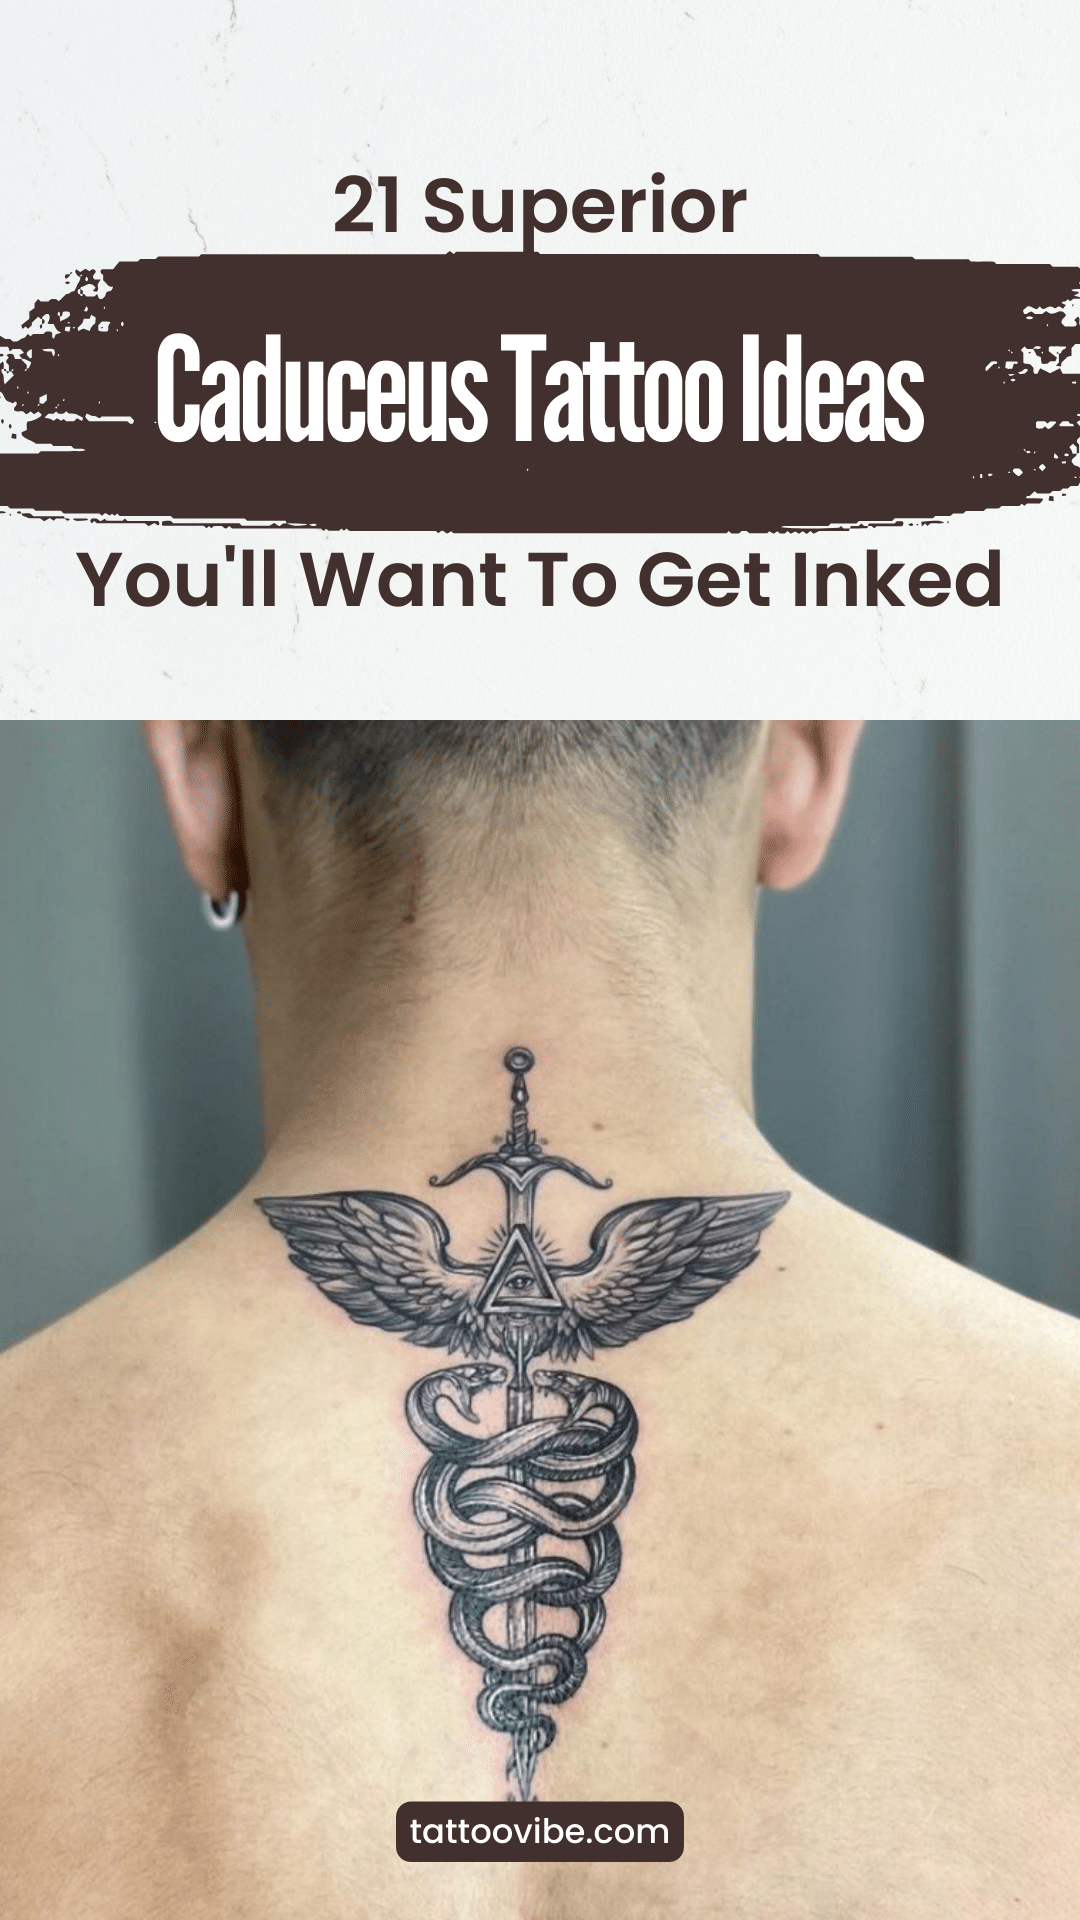 21 ideias de tatuagens de caduceu superiores que vai querer tatuar